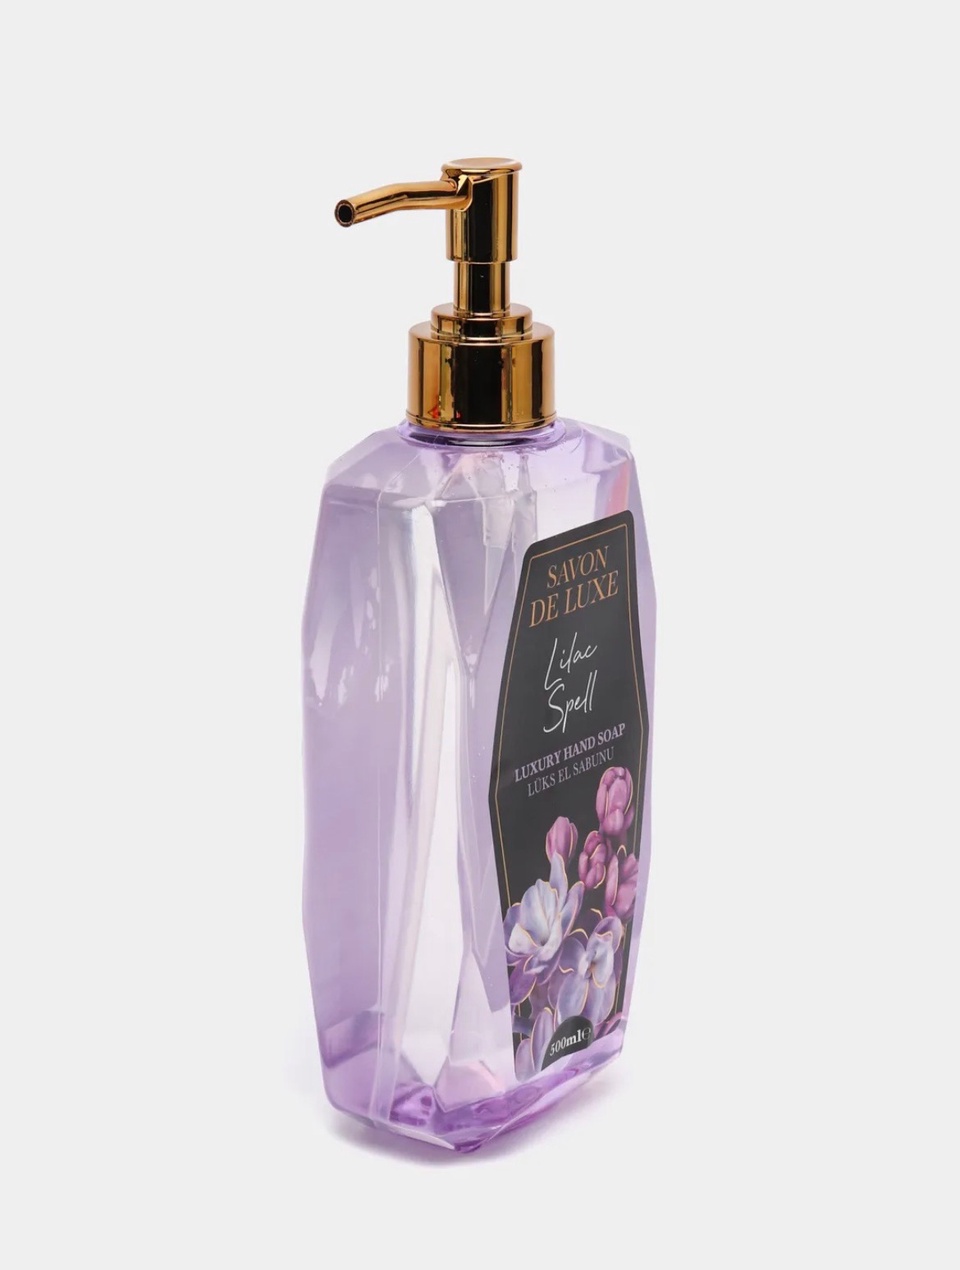 Savon De Luxe Жидкое мыло «Чарующая серень» - 280 ₽, заказать онлайн.